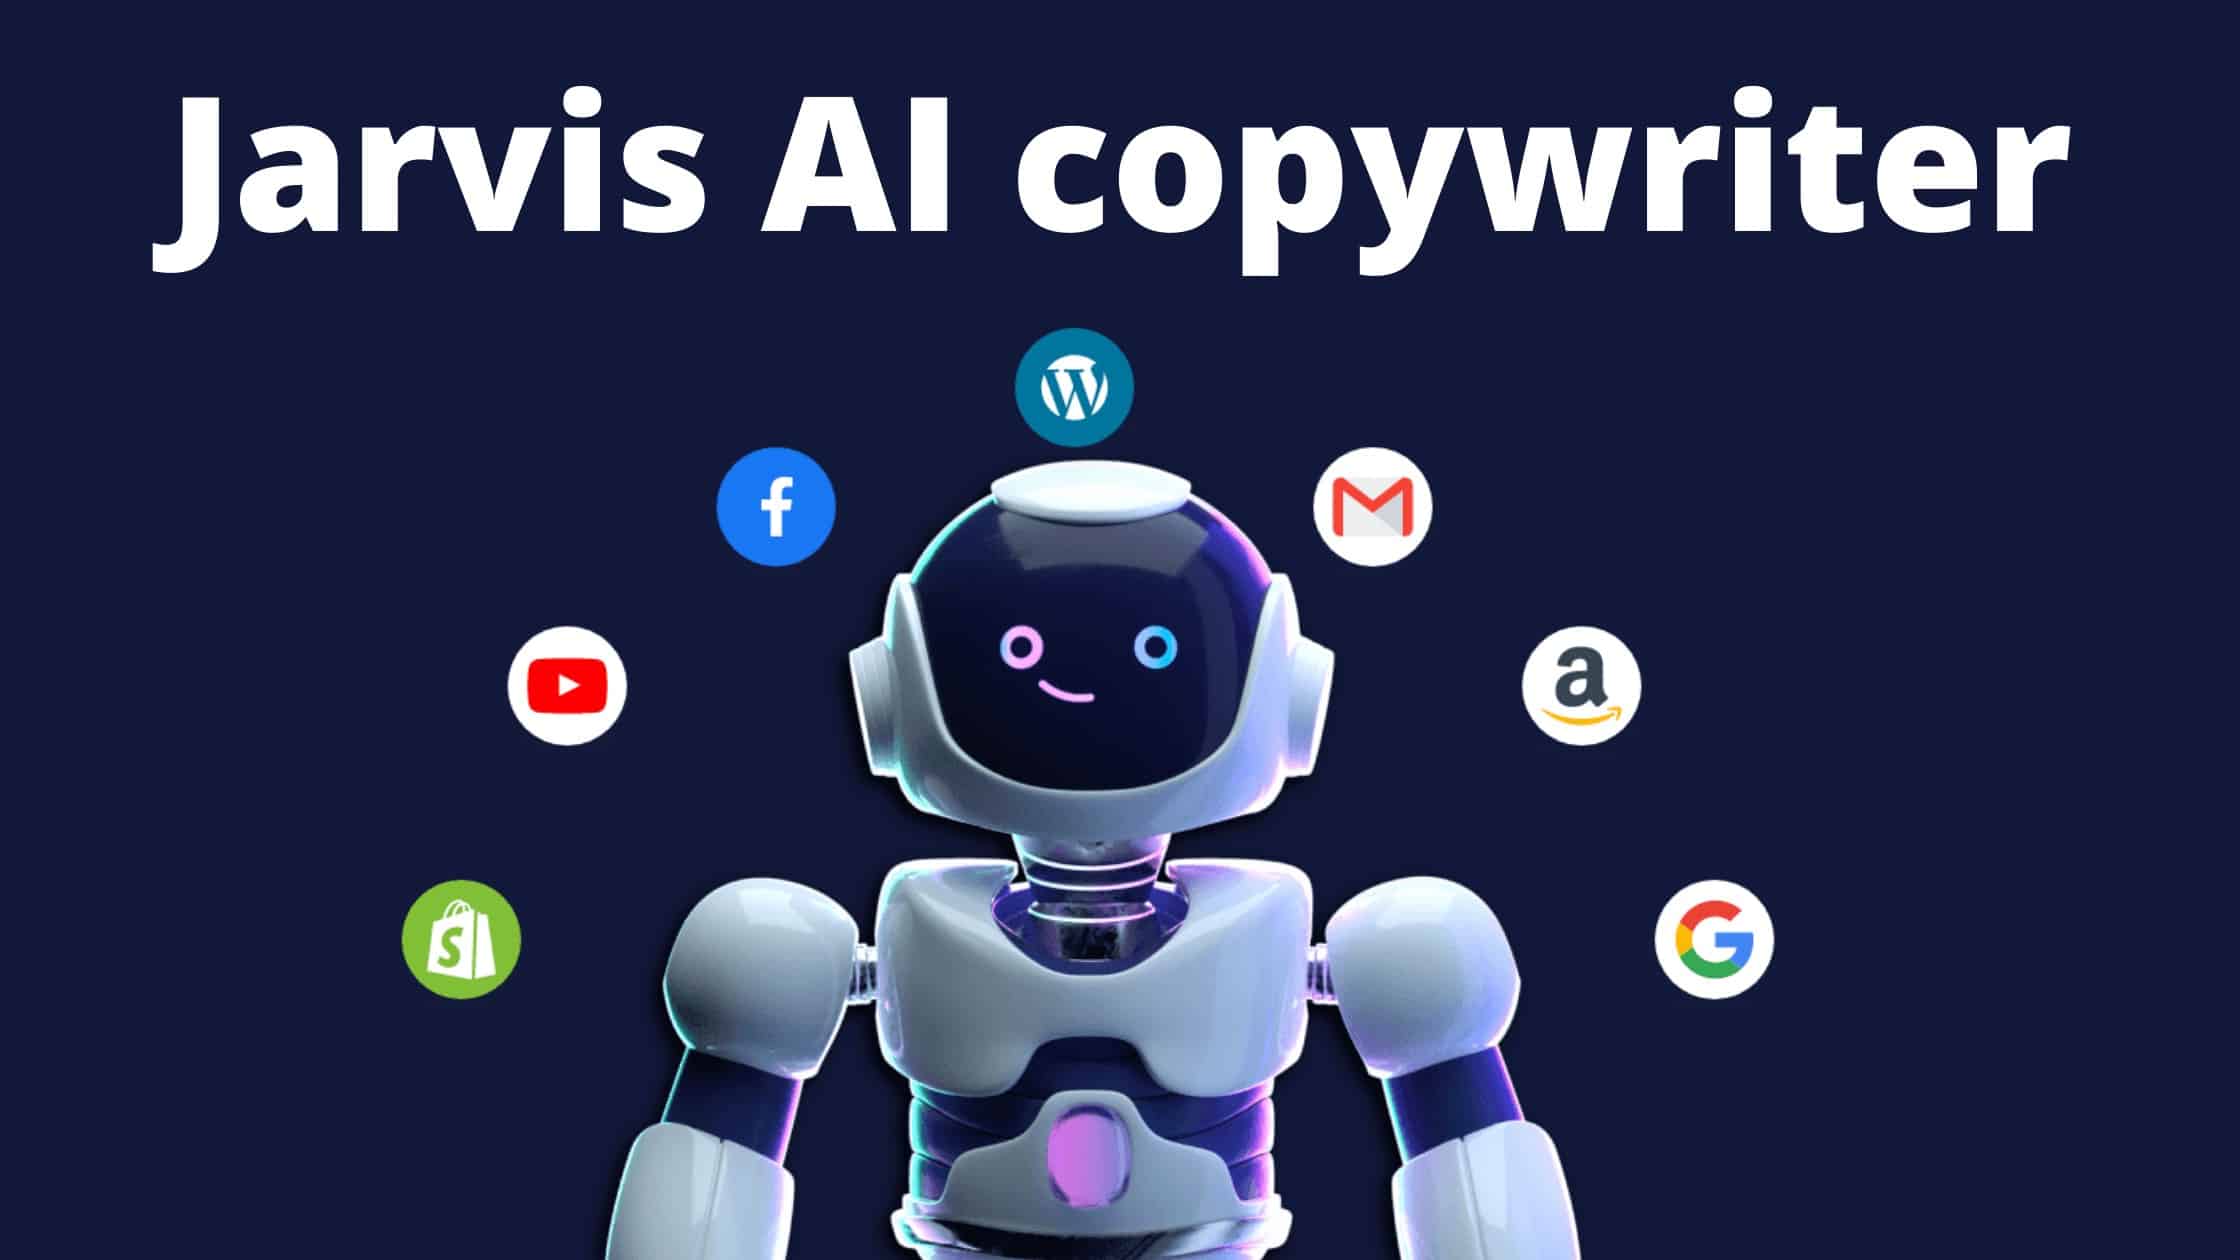 Jarvis AI copywriter